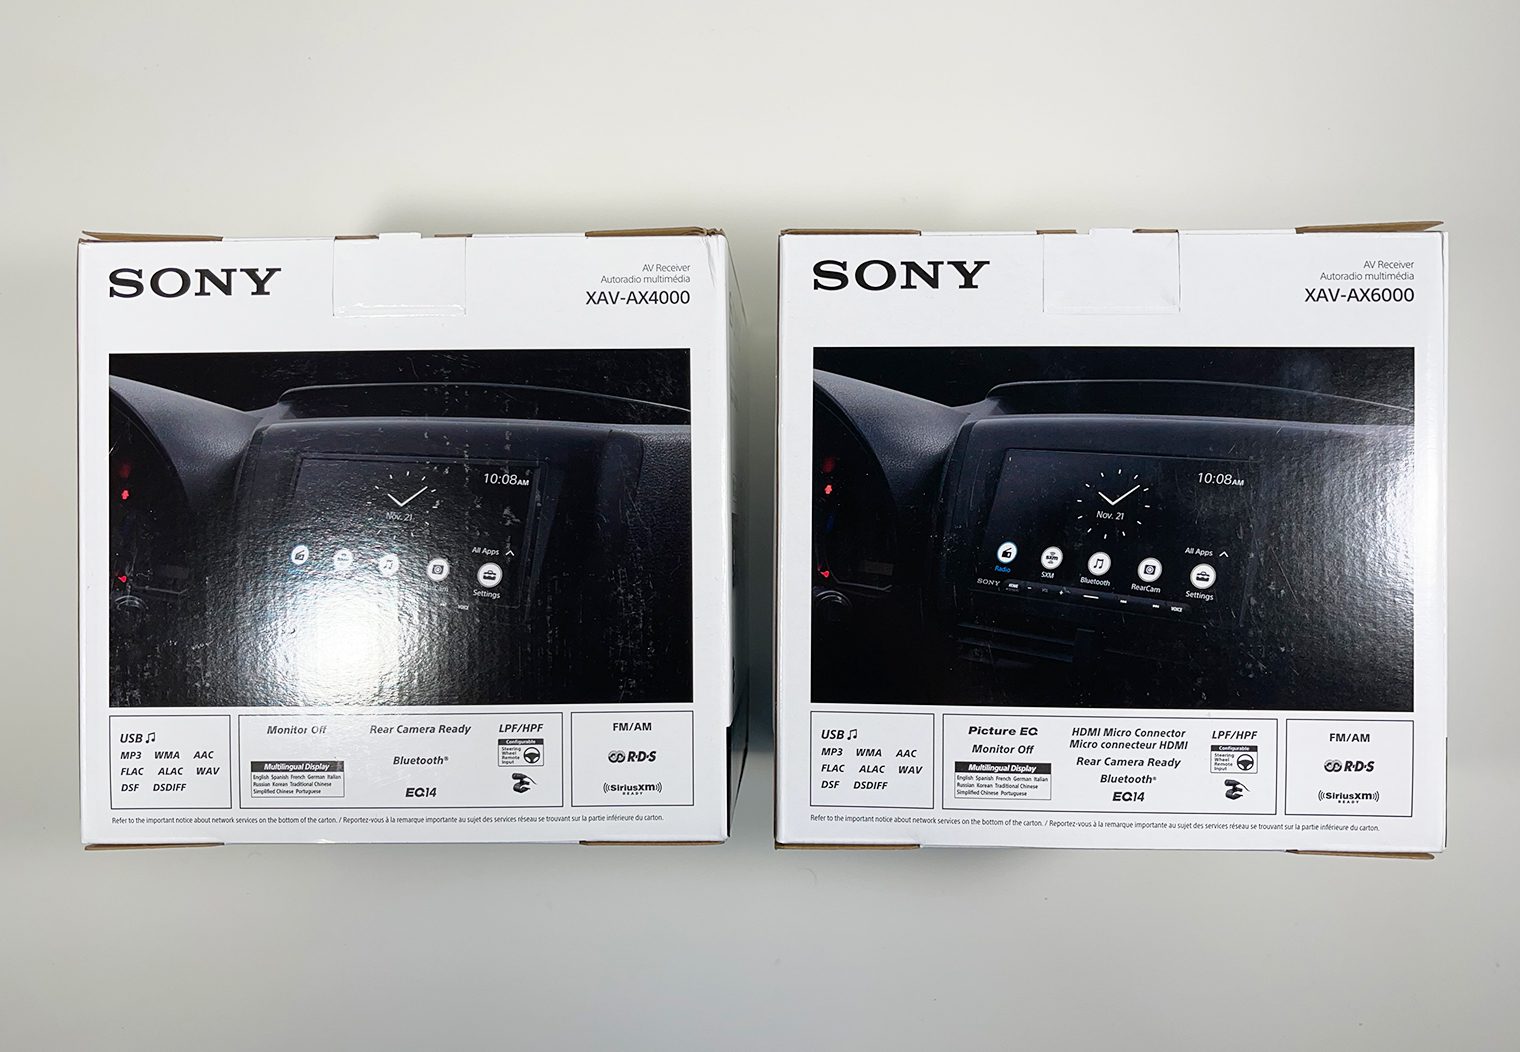 Sony XAV-AX4000 vs XAV-AX6000 boxes rear